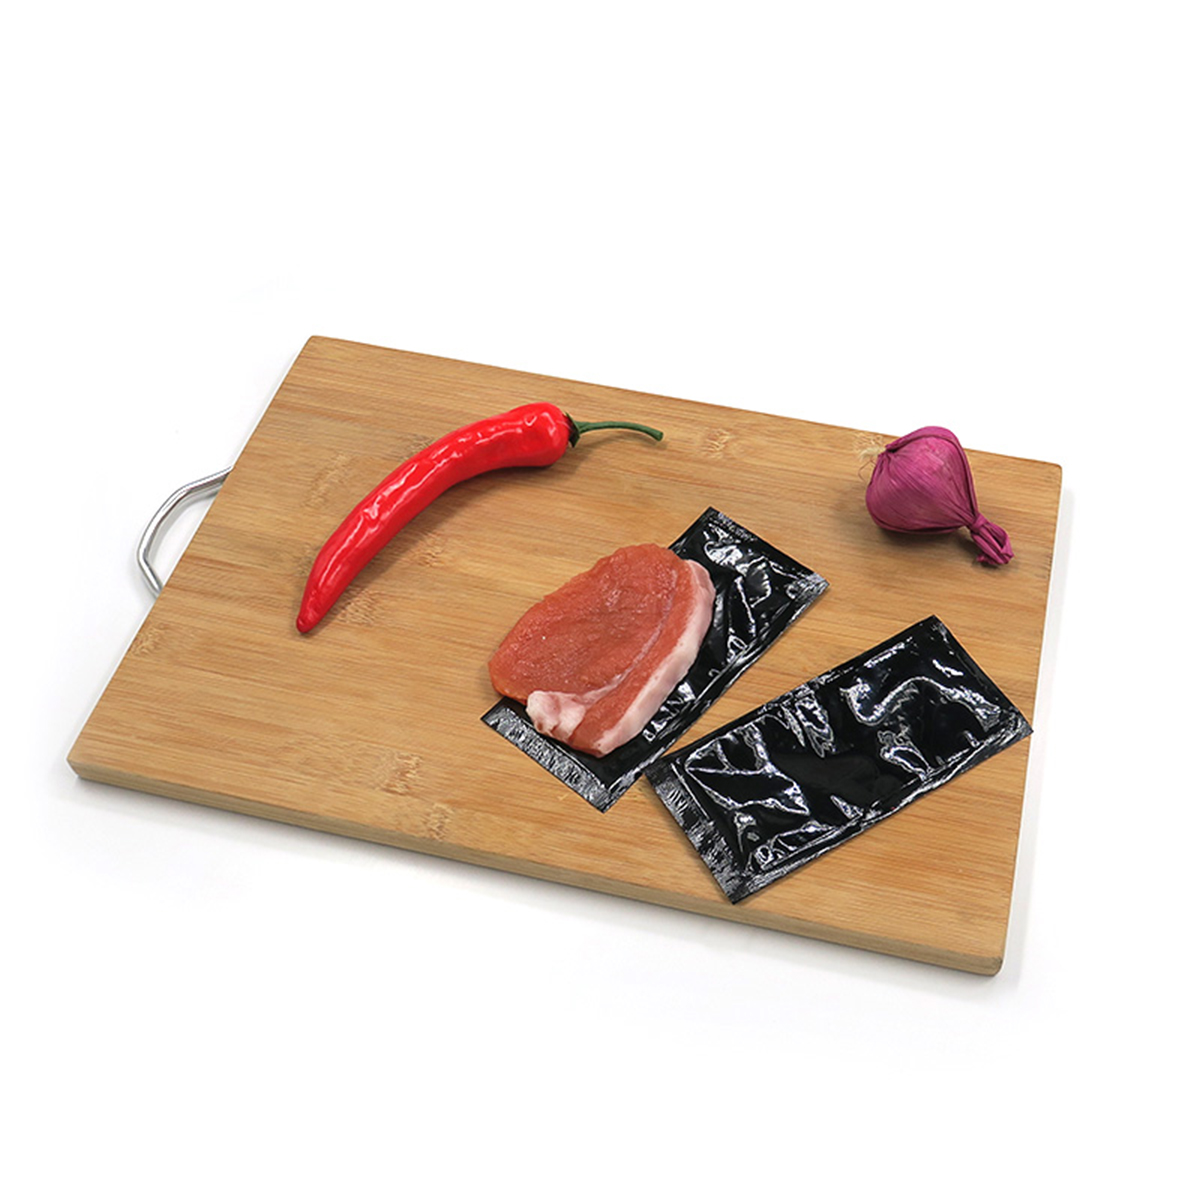 Tampon absorbant la viande pour les plateaux de supermarché en mousse d'eau goutte à goutte de réfrigérateur